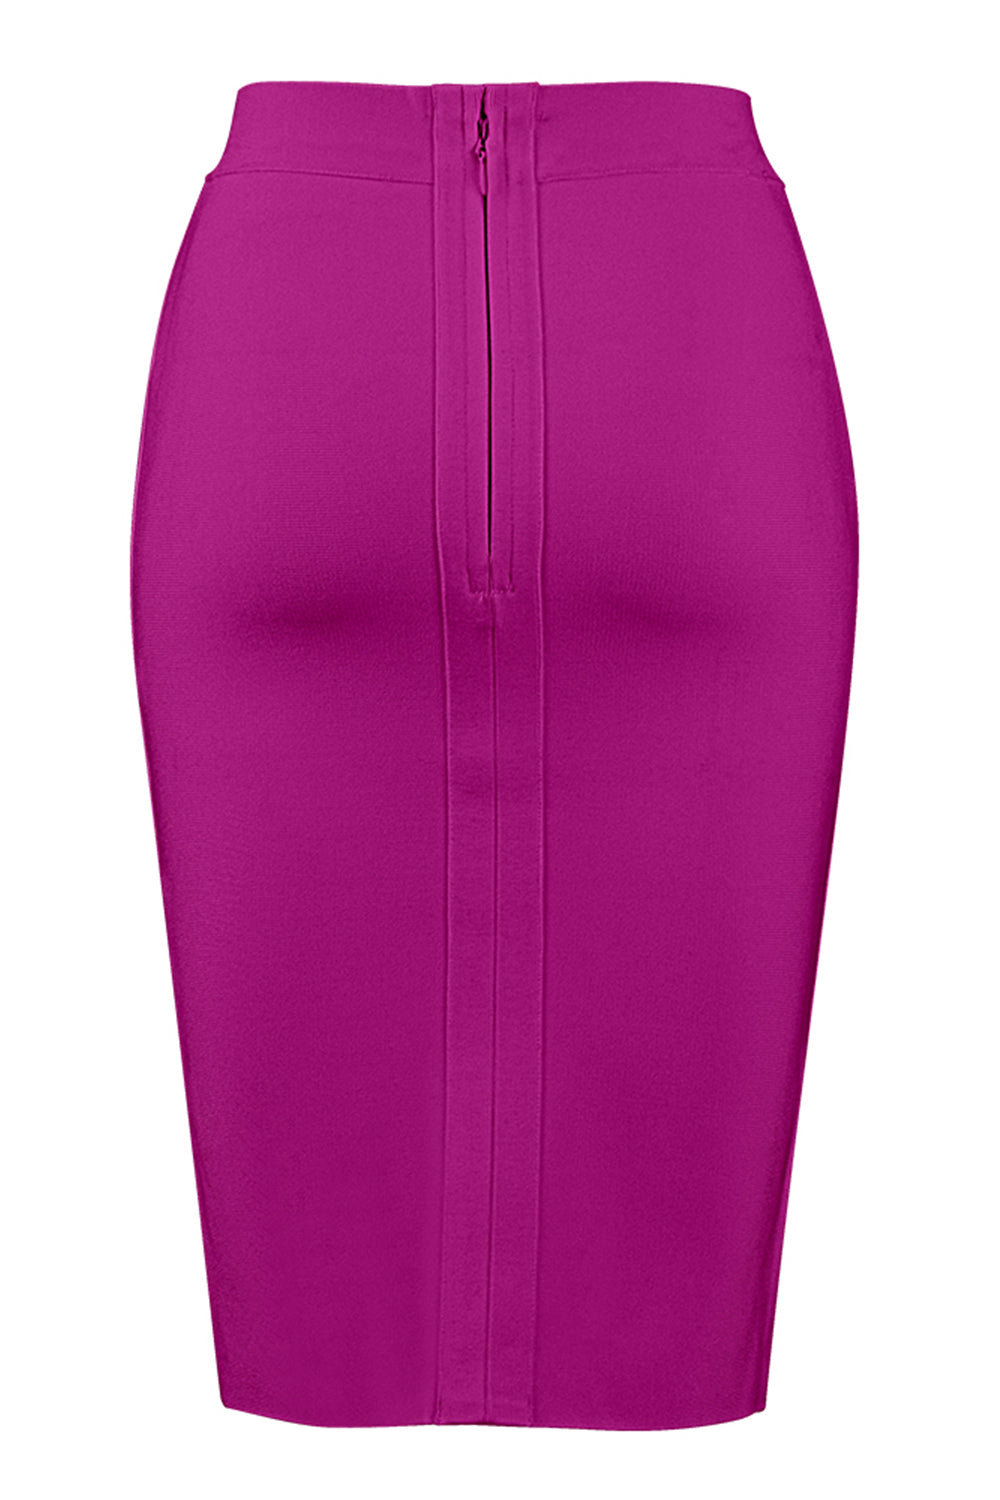 Plaid Skirt for Women Office Fuchsia Skirt Burgundy Bandage Skirt